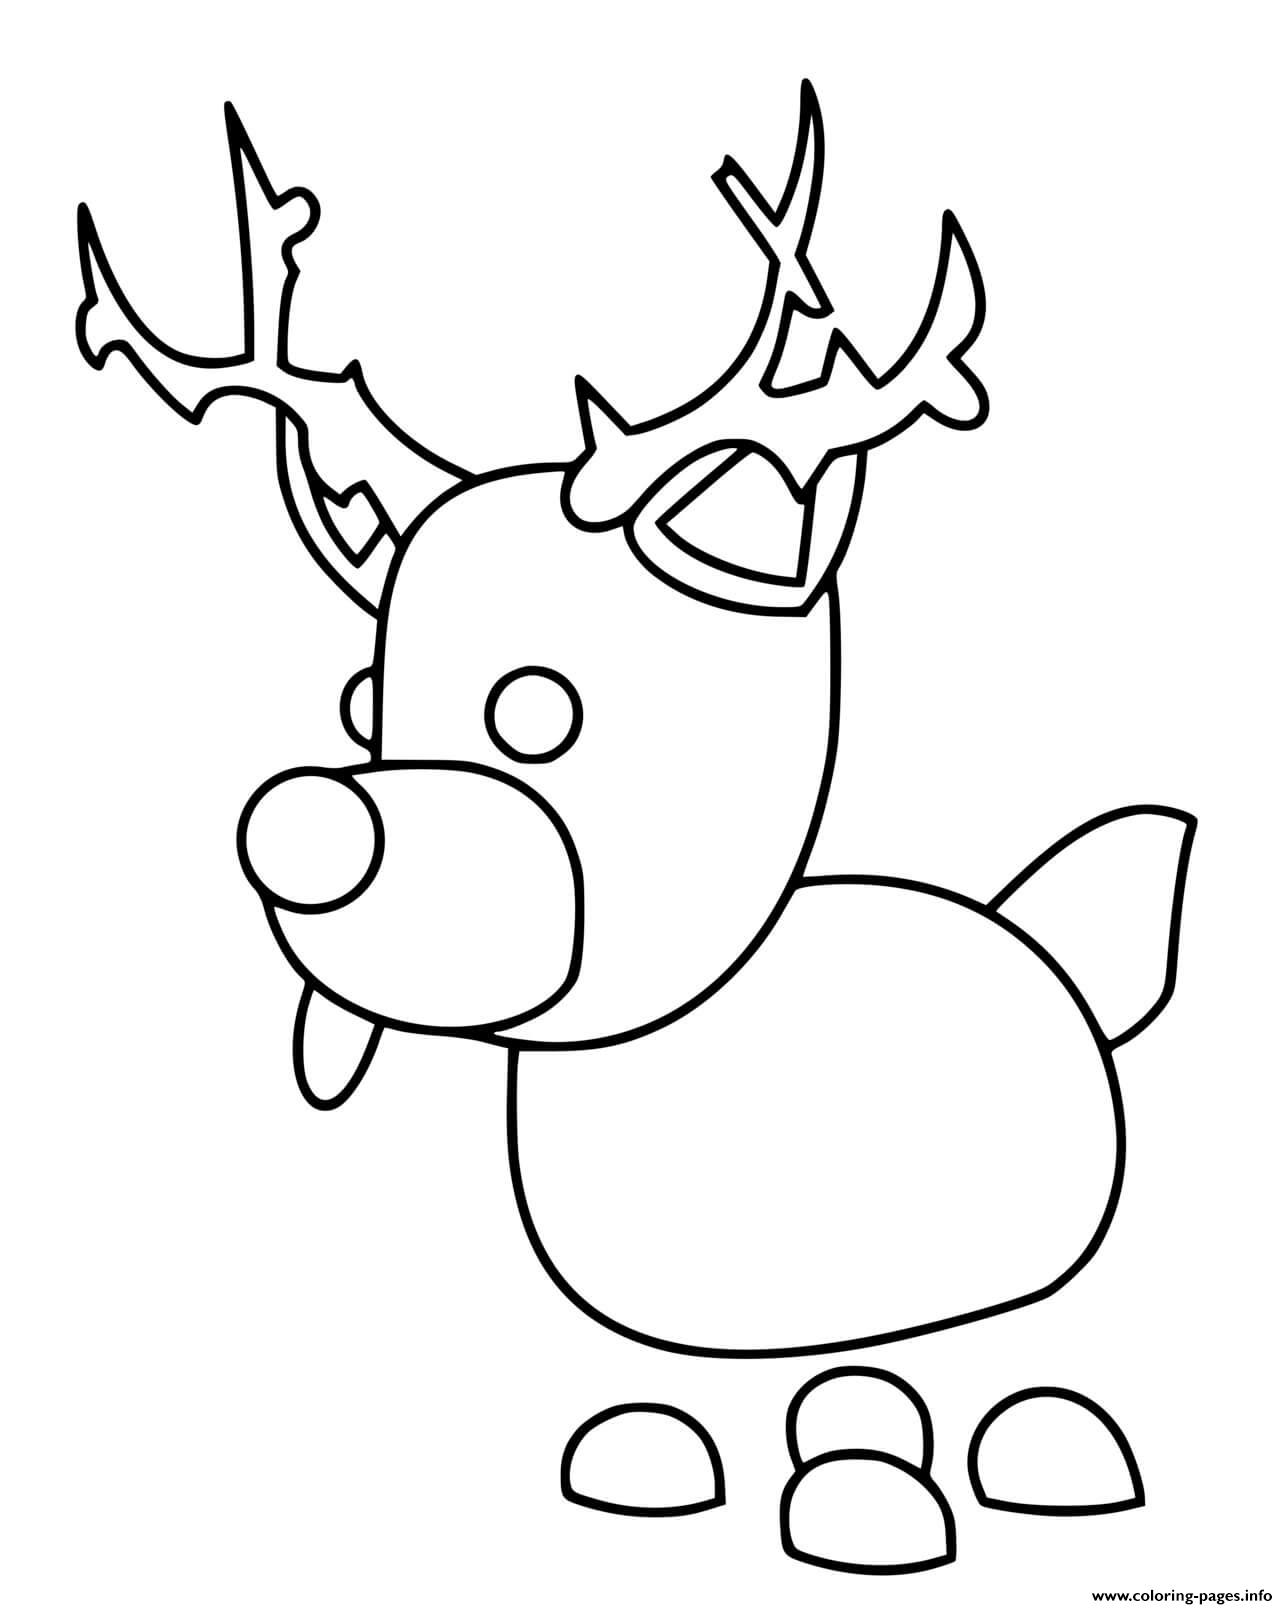 Adopt Me Reindeer Coloring Pages Printable